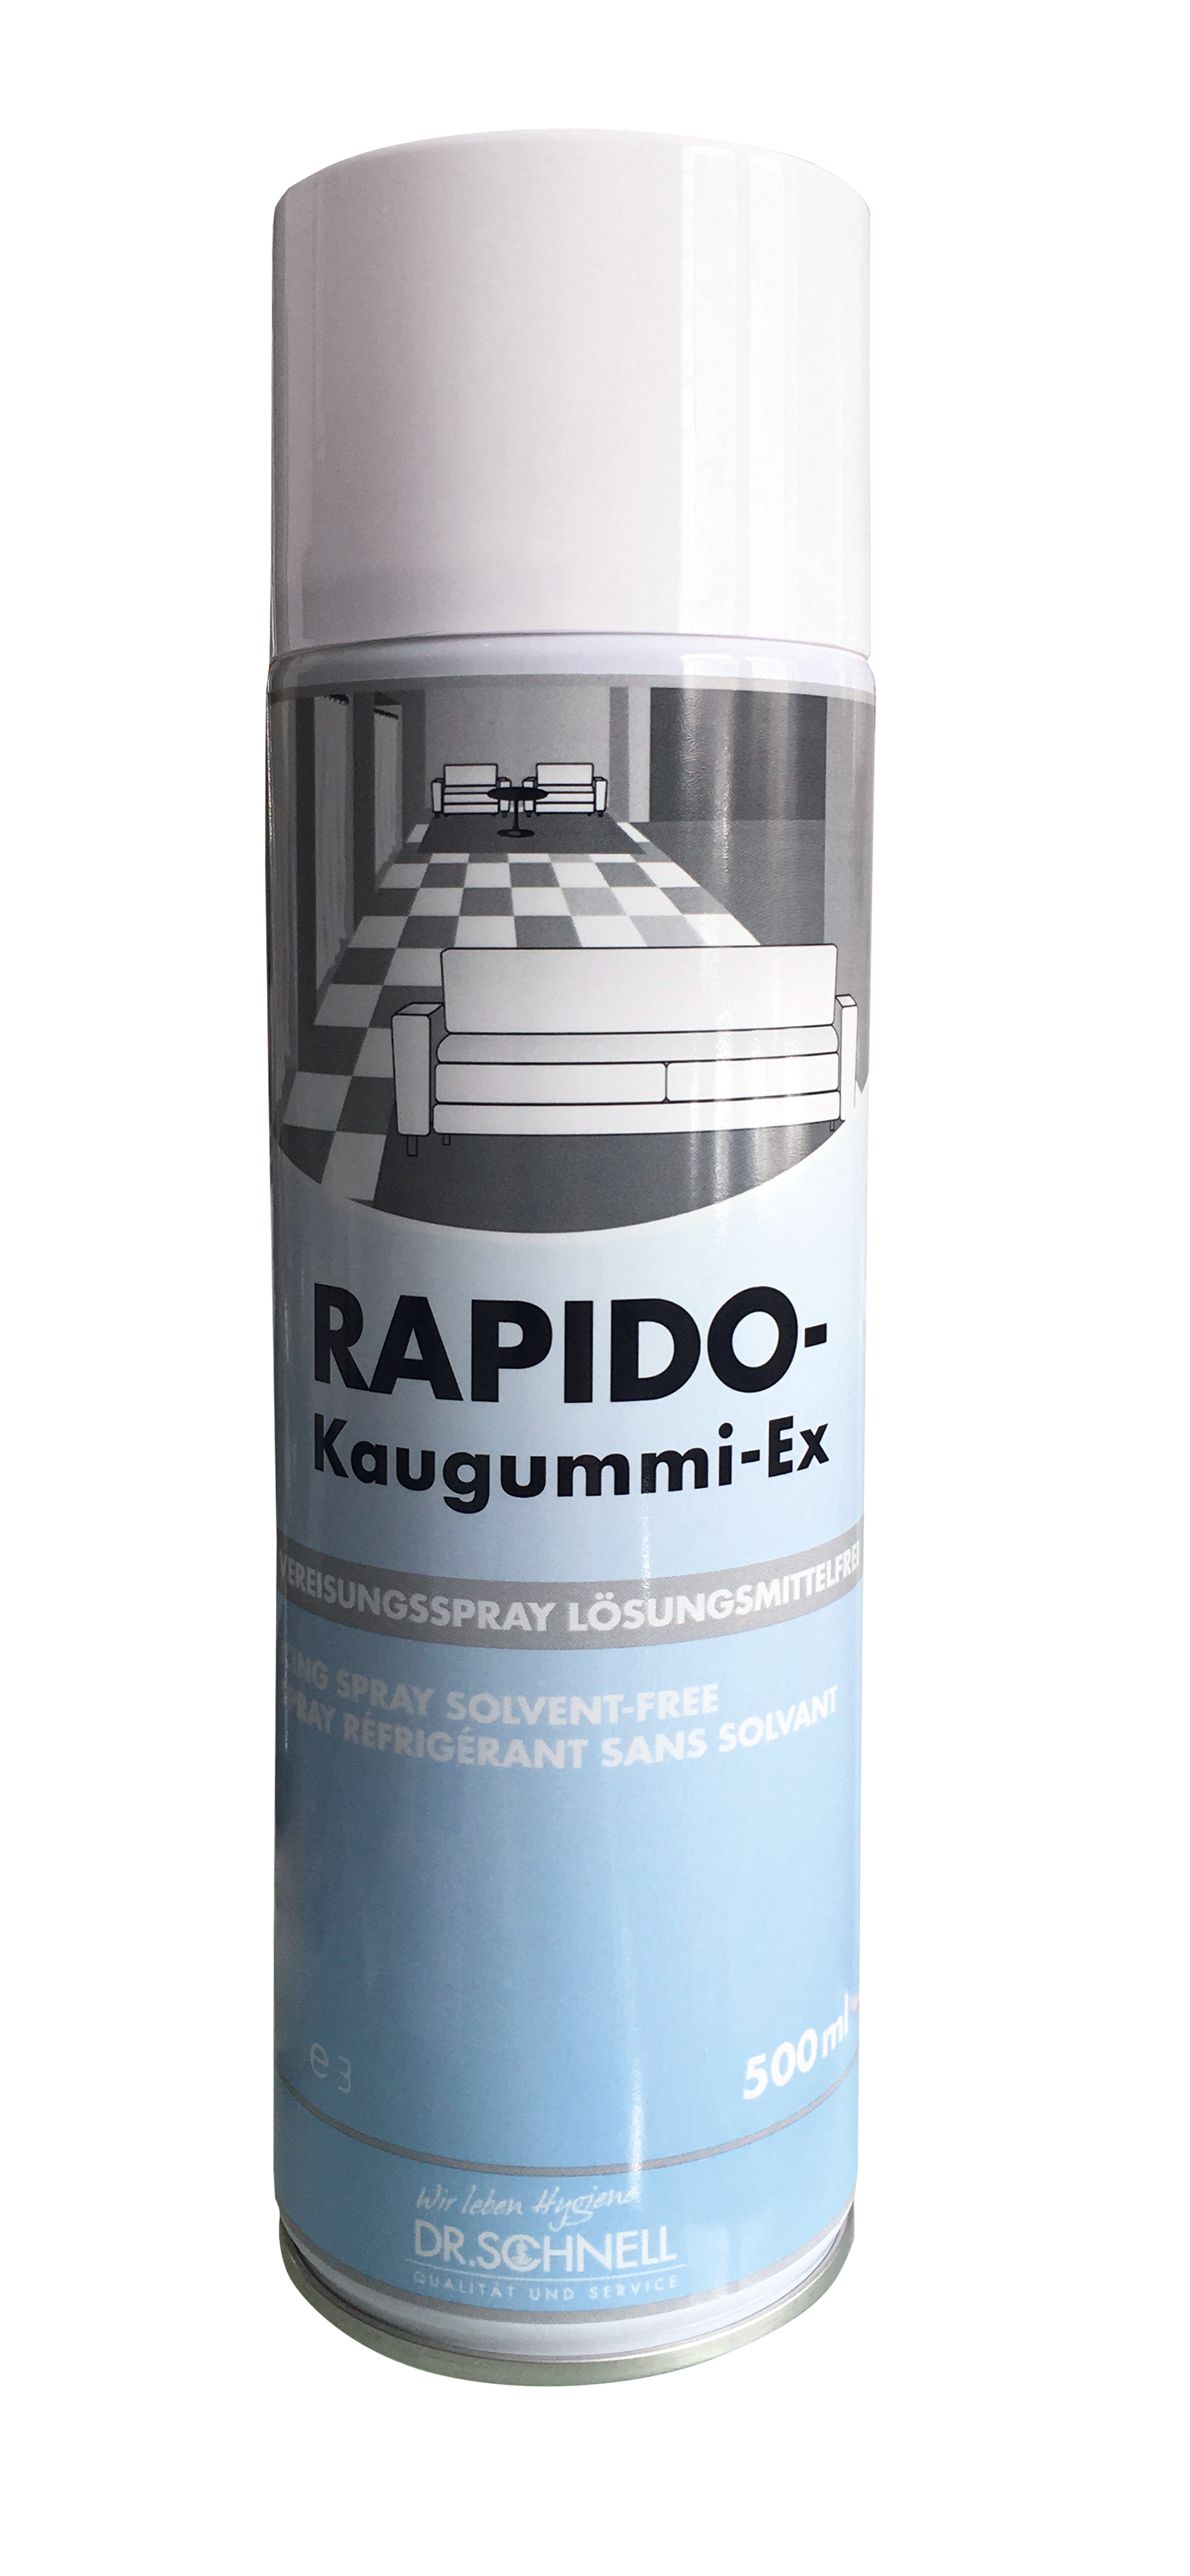 RAPIDO Kaugummi-Ex Vereisungs-,spray 500ml, Dr. Schnell